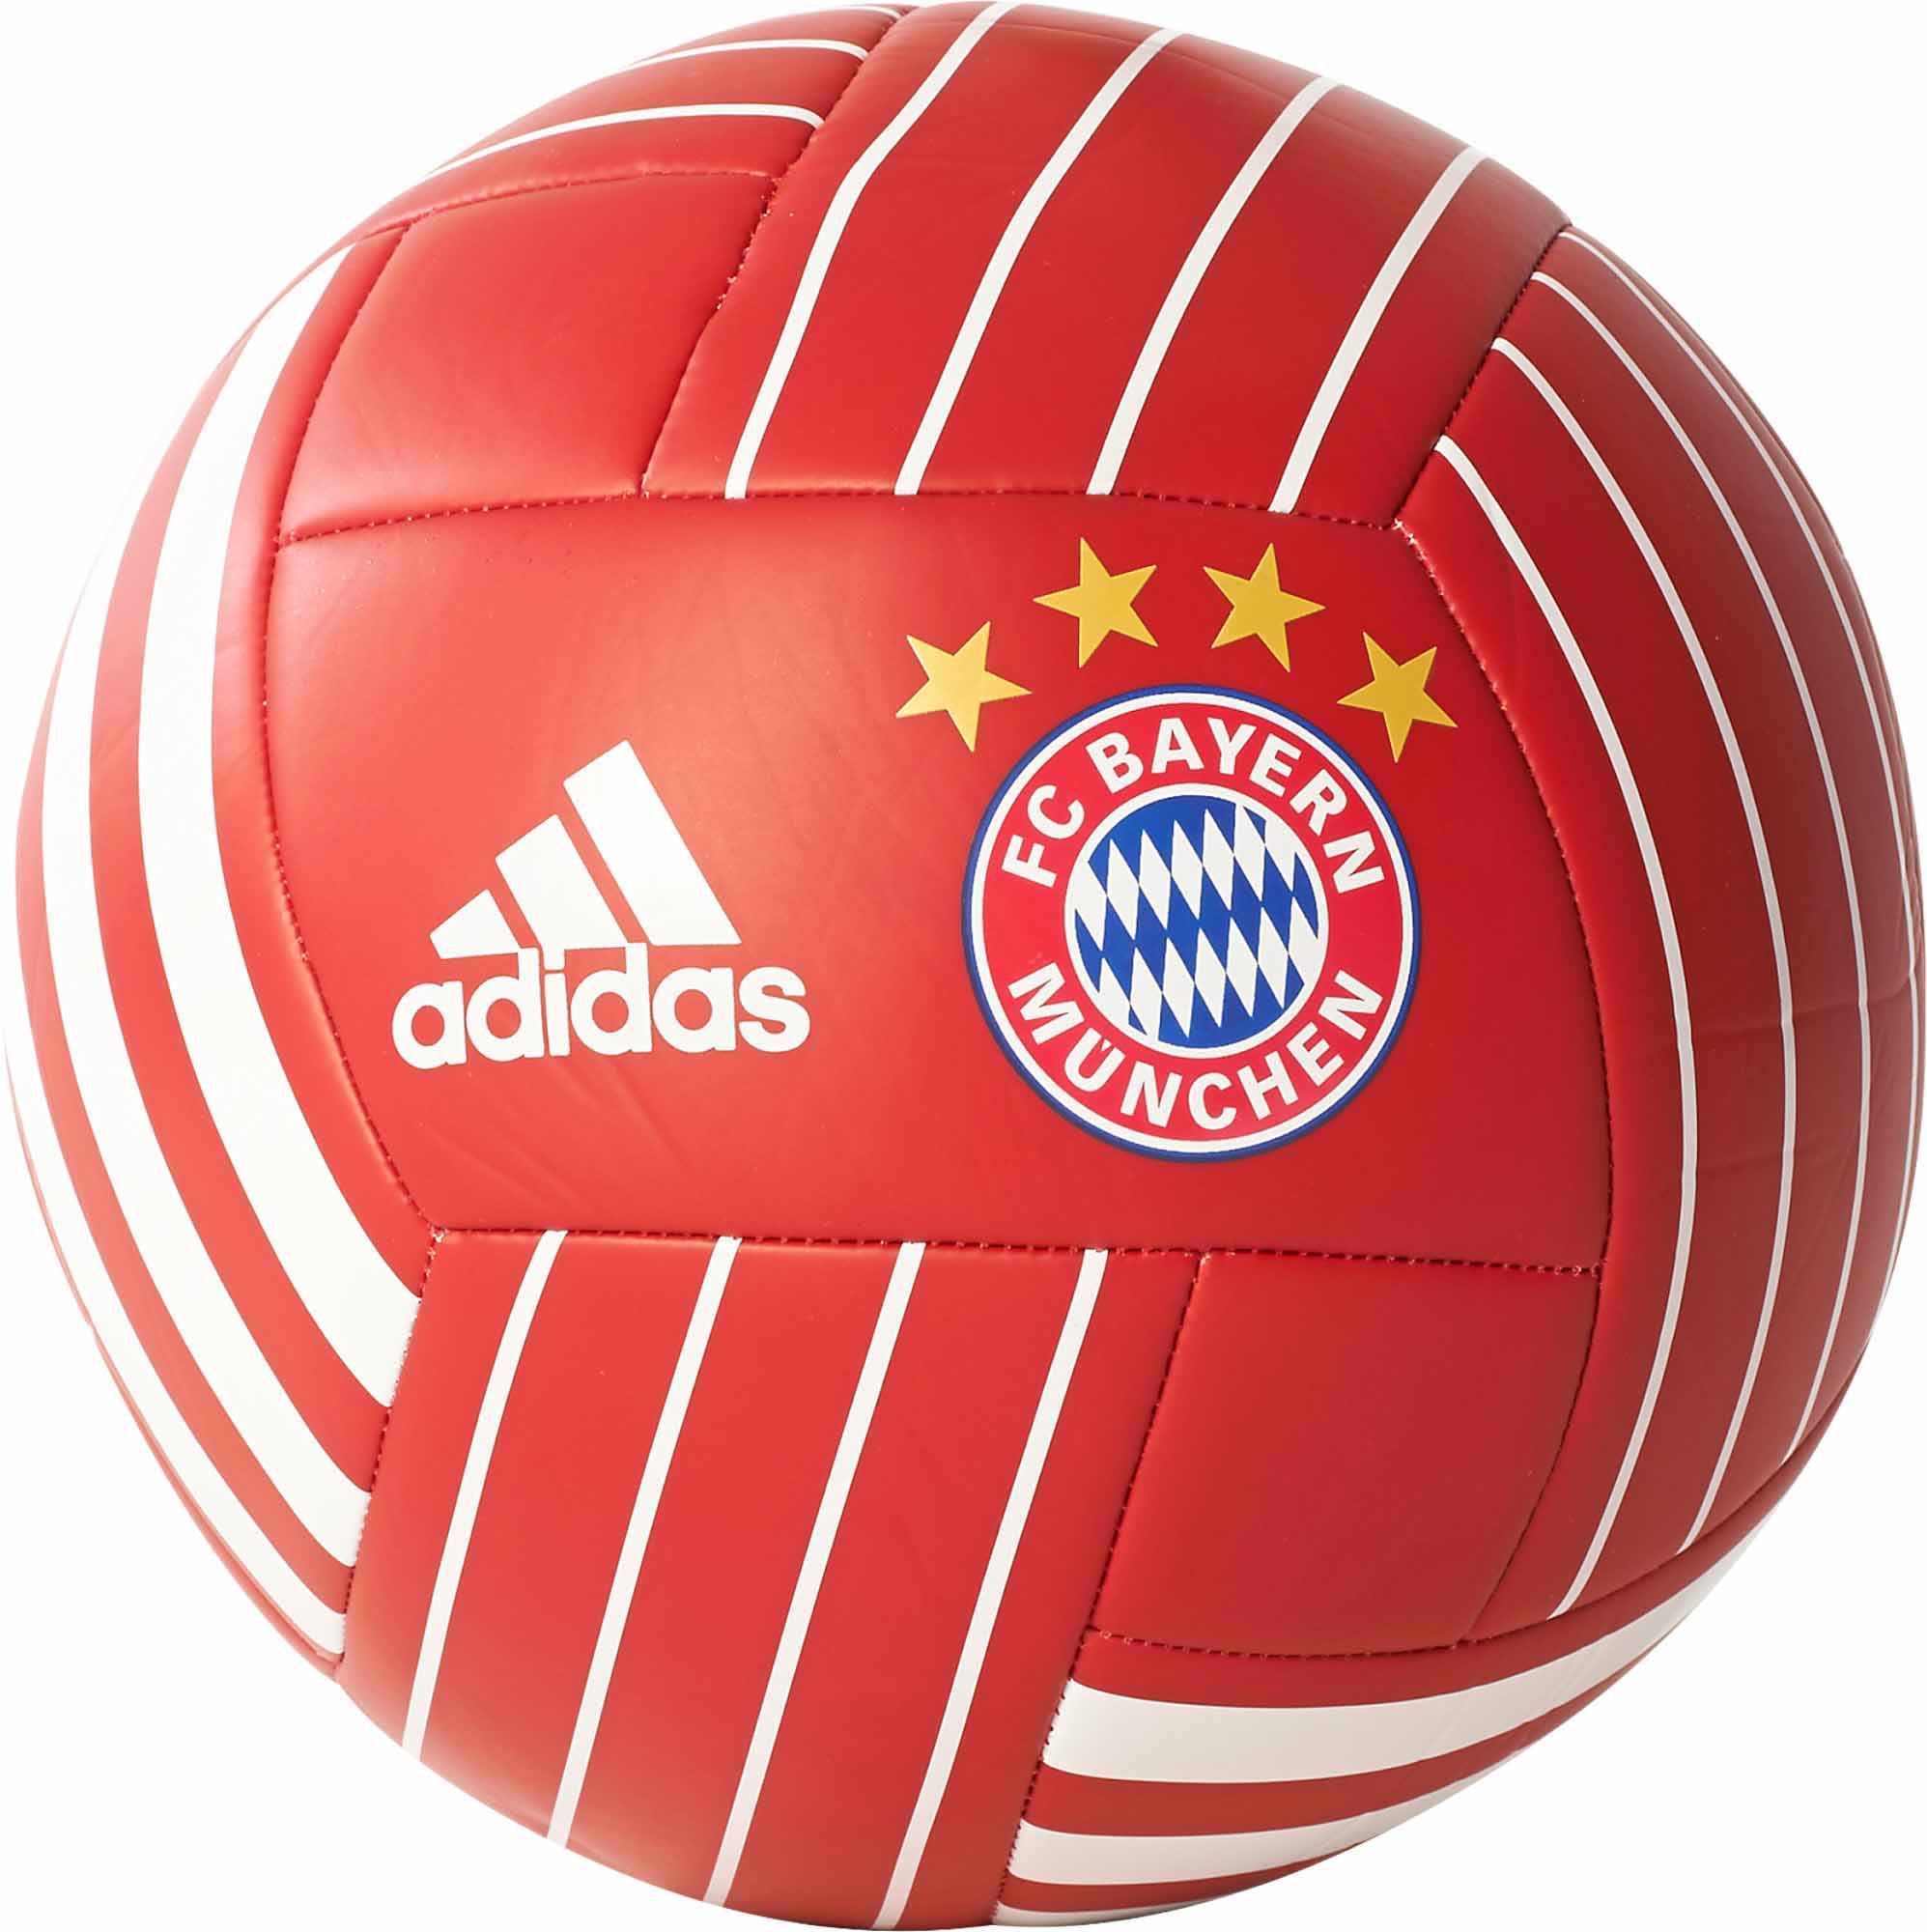 wetgeving Octrooi huren adidas Bayern Munich Soccer Ball - Red Soccer Balls